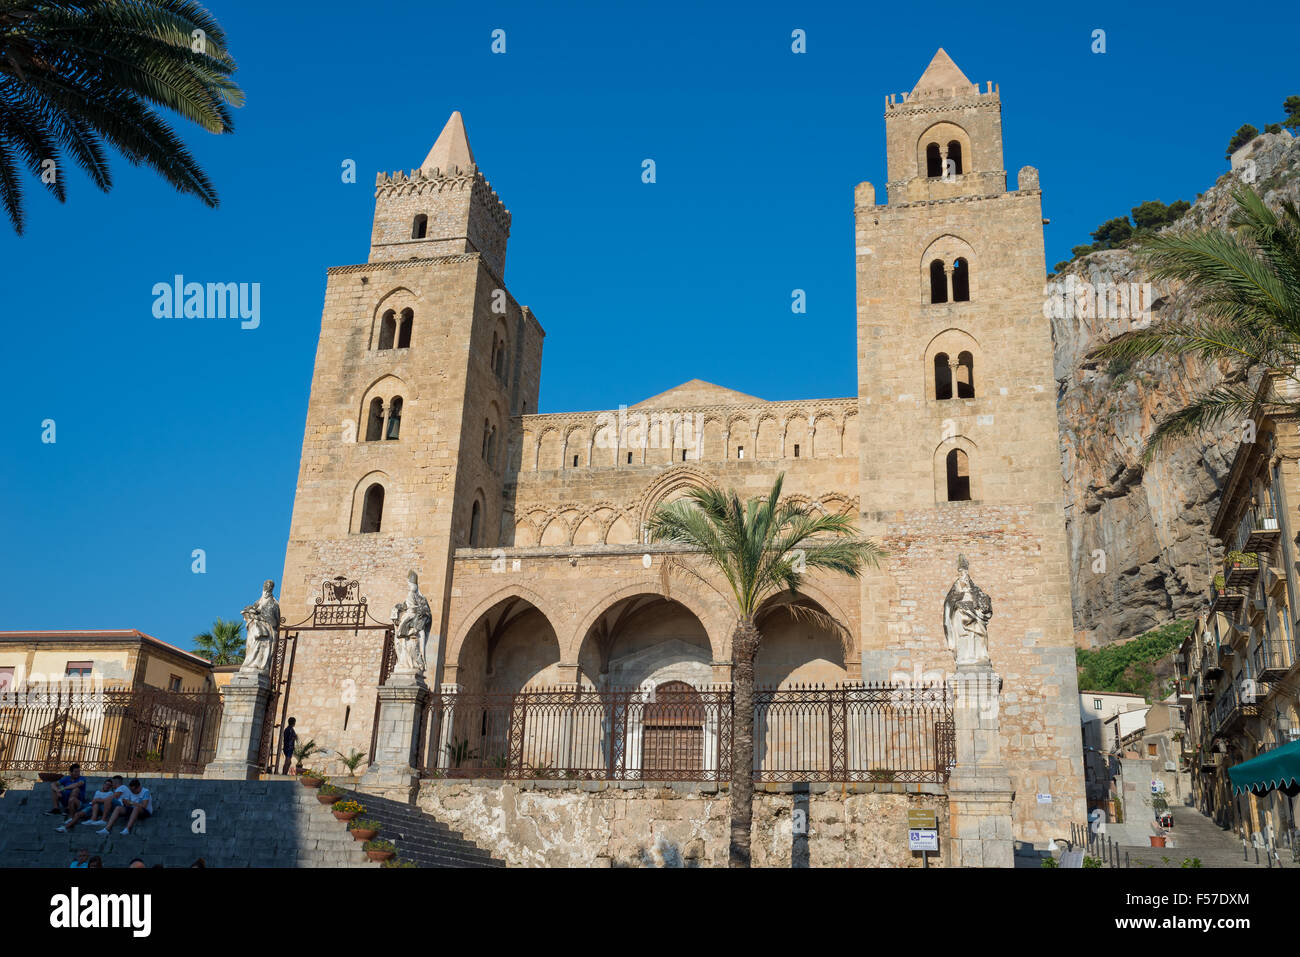 Principal facade, Norman style, of Cathedral Basilica of Cefalu, Sicily. Italy. The famous facade Stock Photo